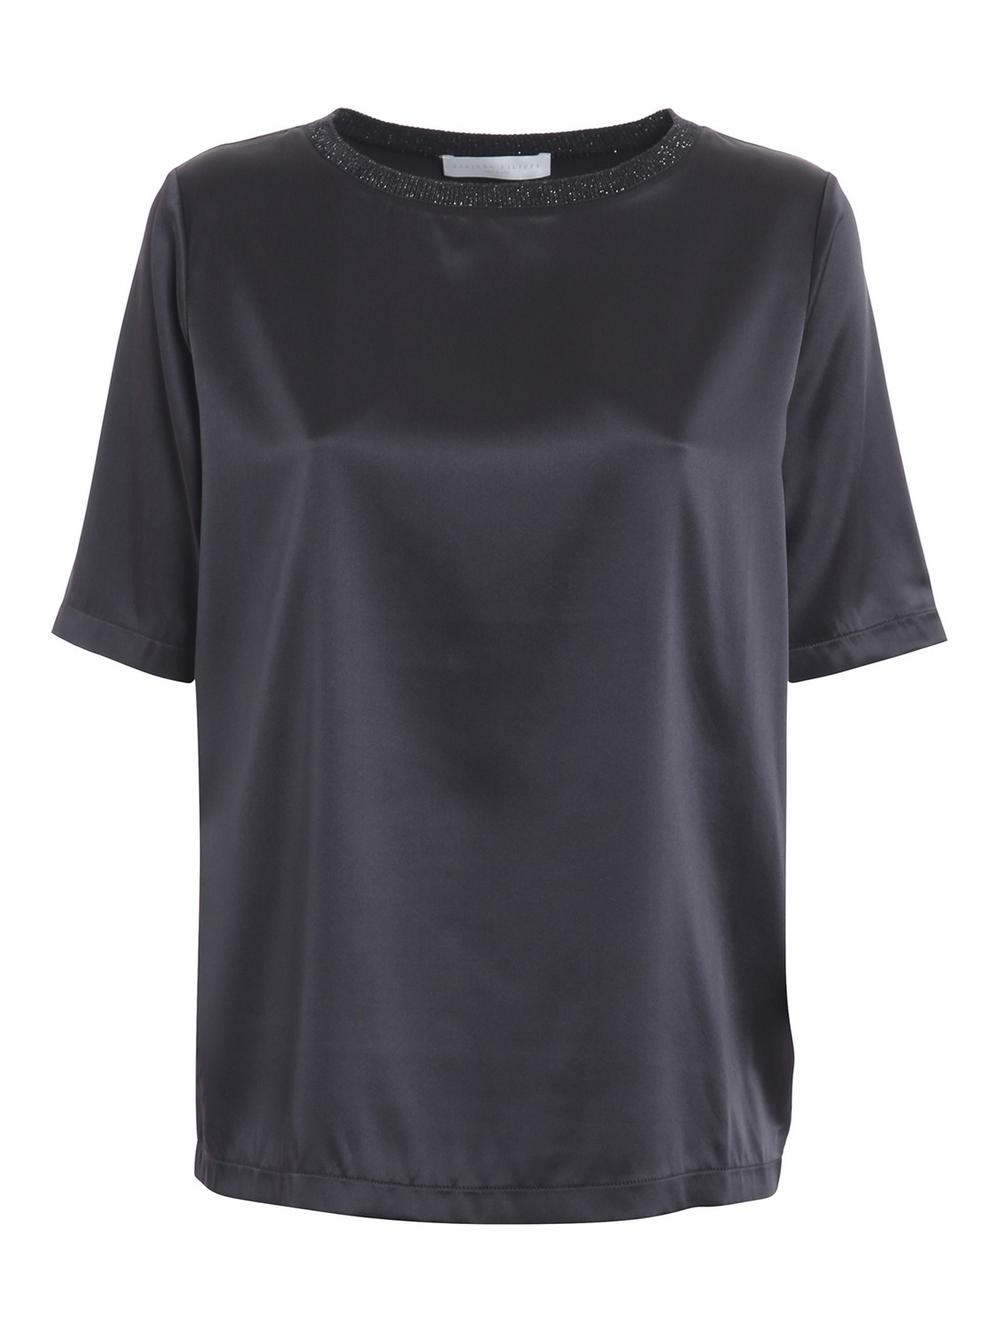 Fabiana Filippi - T-Shirt in Seta Antracite Donna - TPD220W3018148